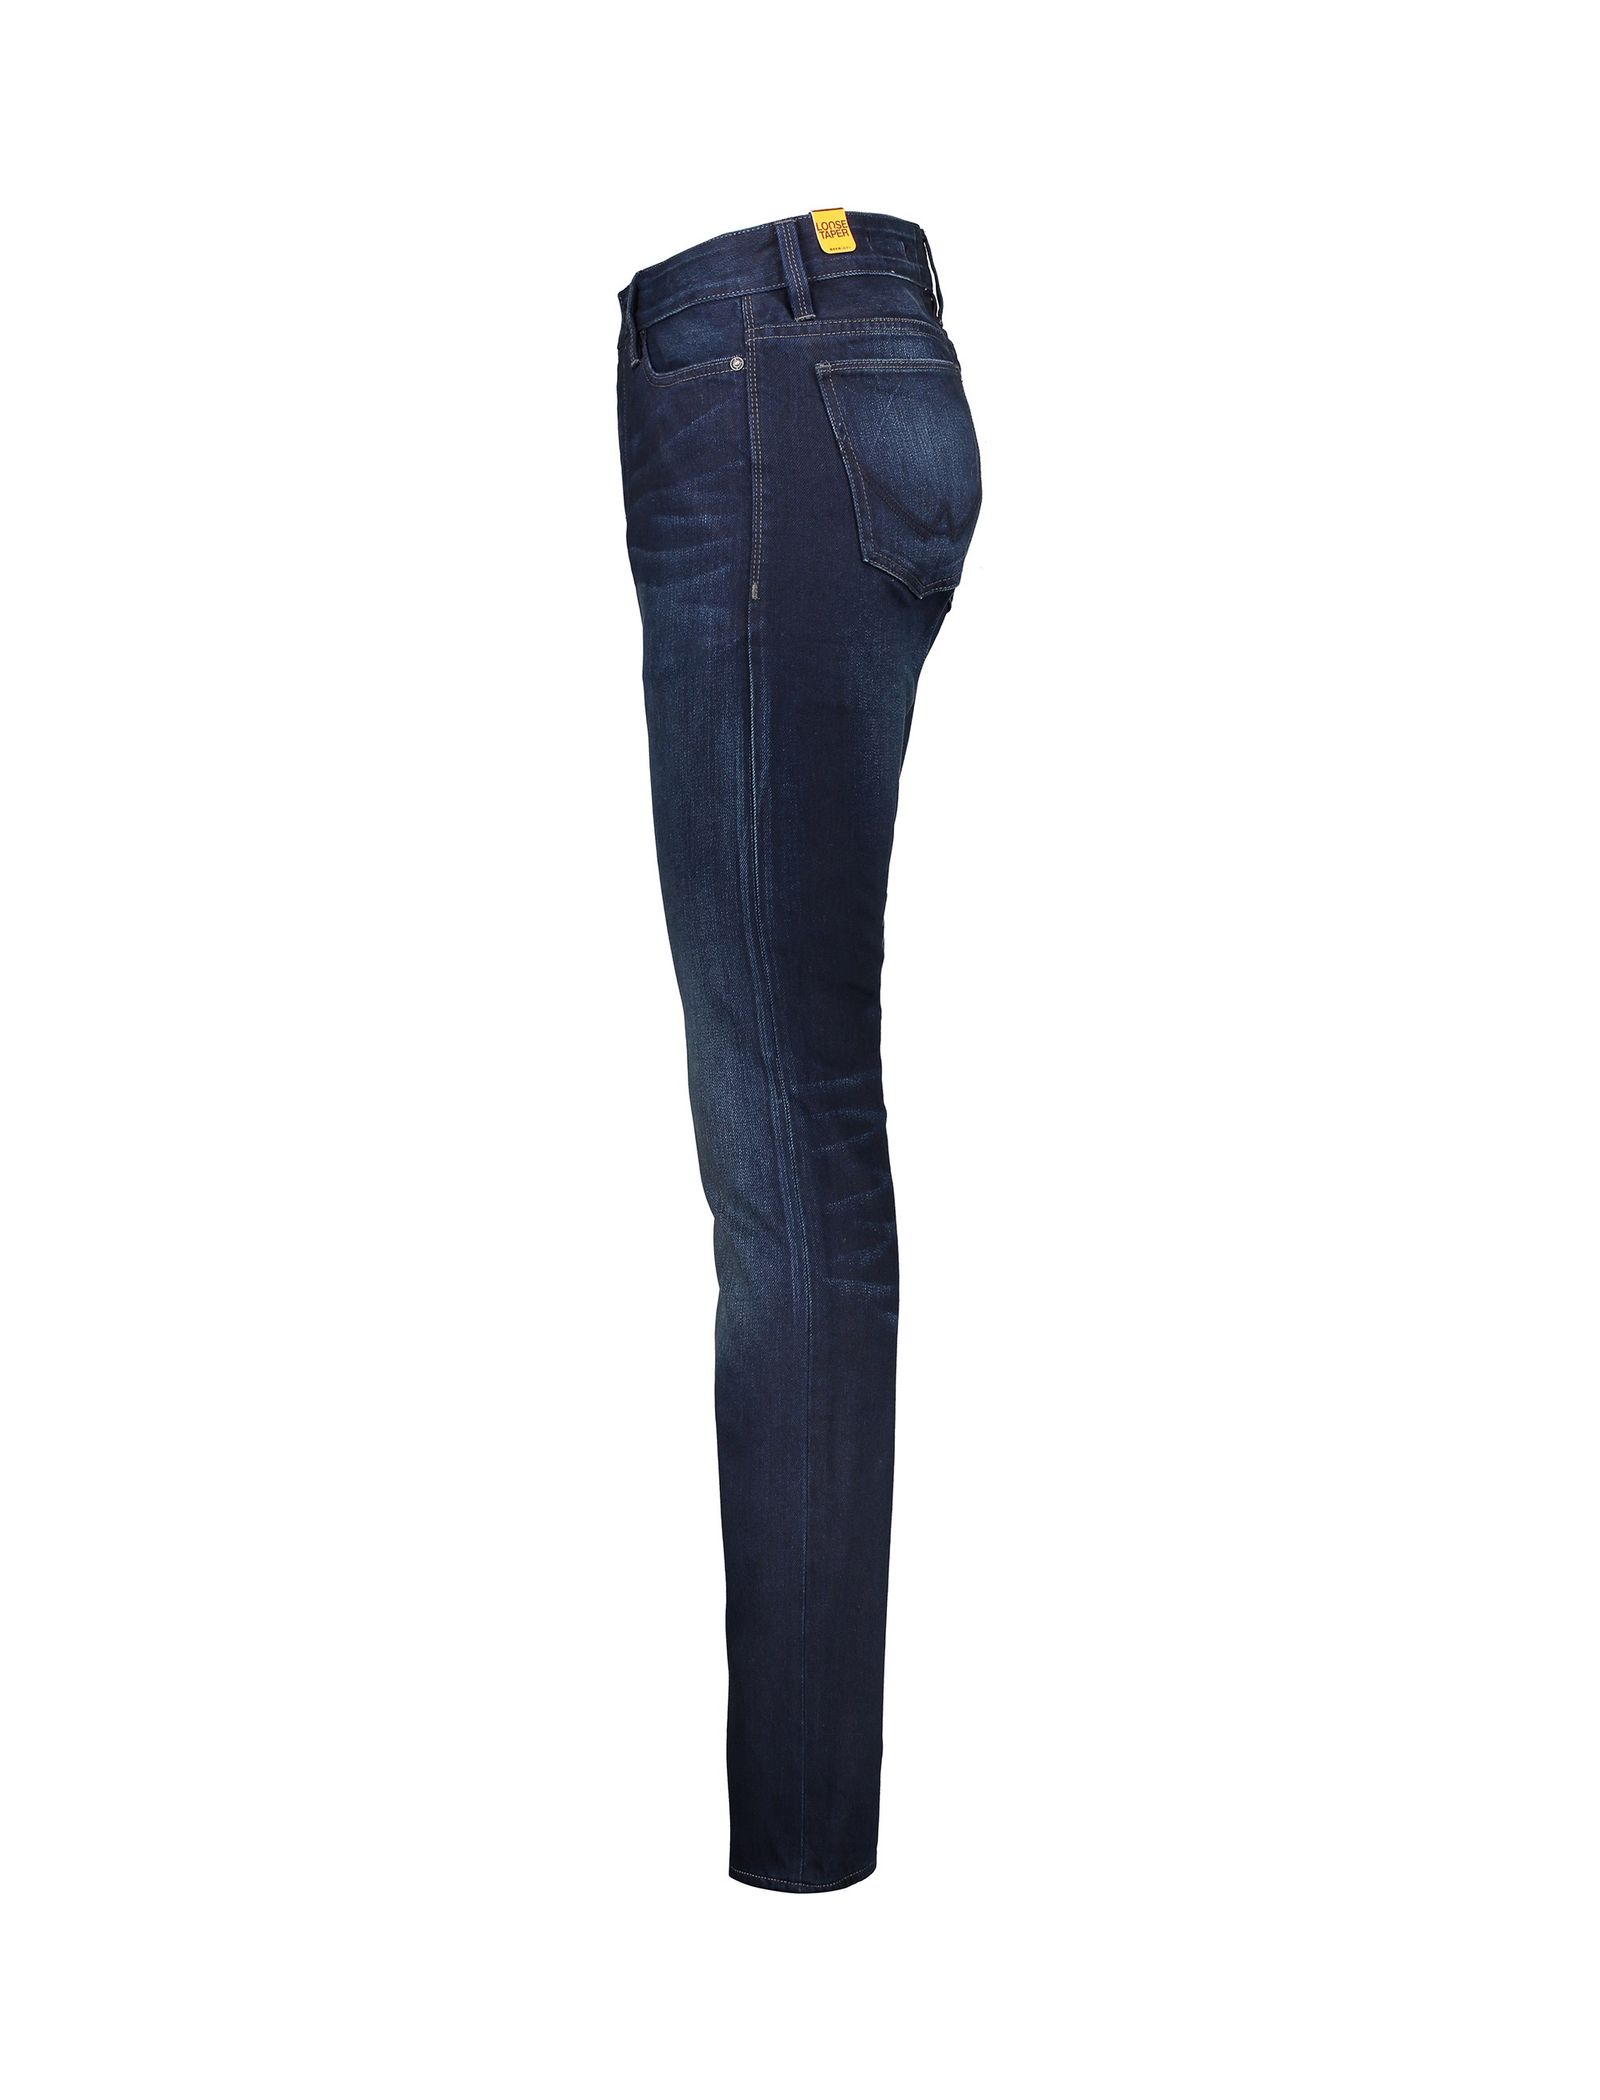 شلوار جین خمره ای مردانه Biker Tapered Jeans - سوپردرای - سرمه اي - 4